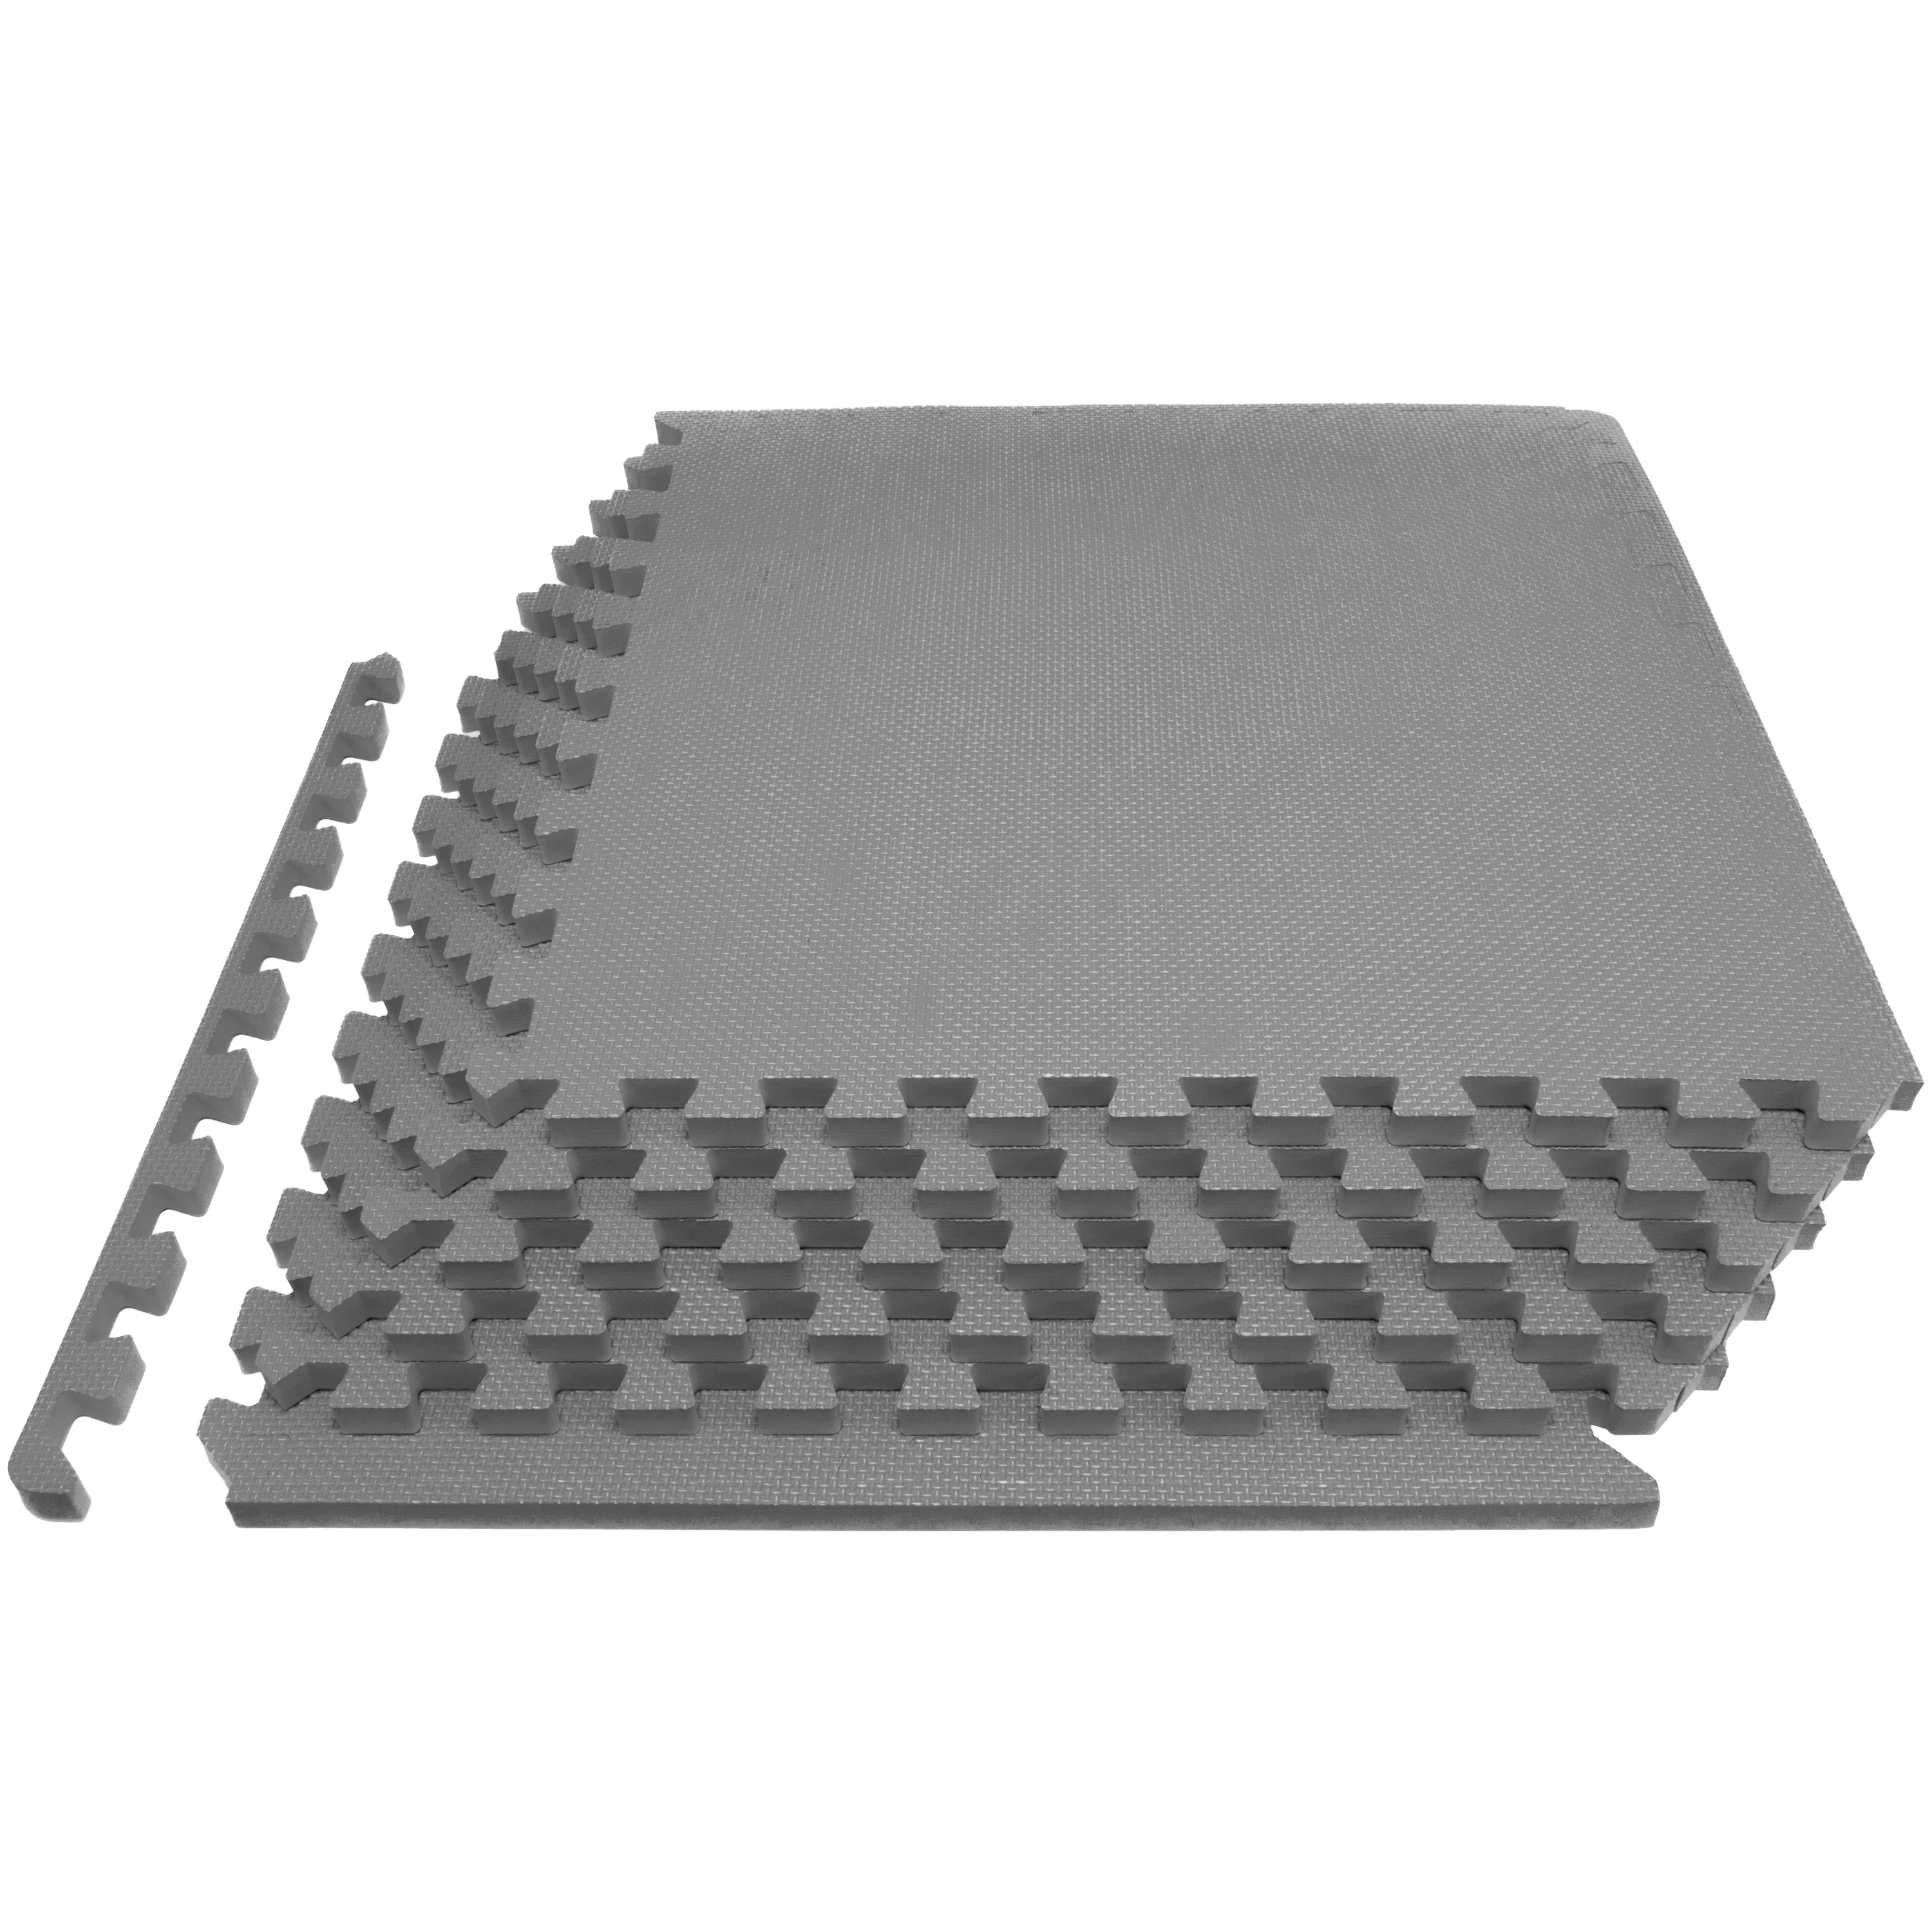 168 sqft yellow interlocking foam floor puzzle tiles mat puzzle mat  flooring 